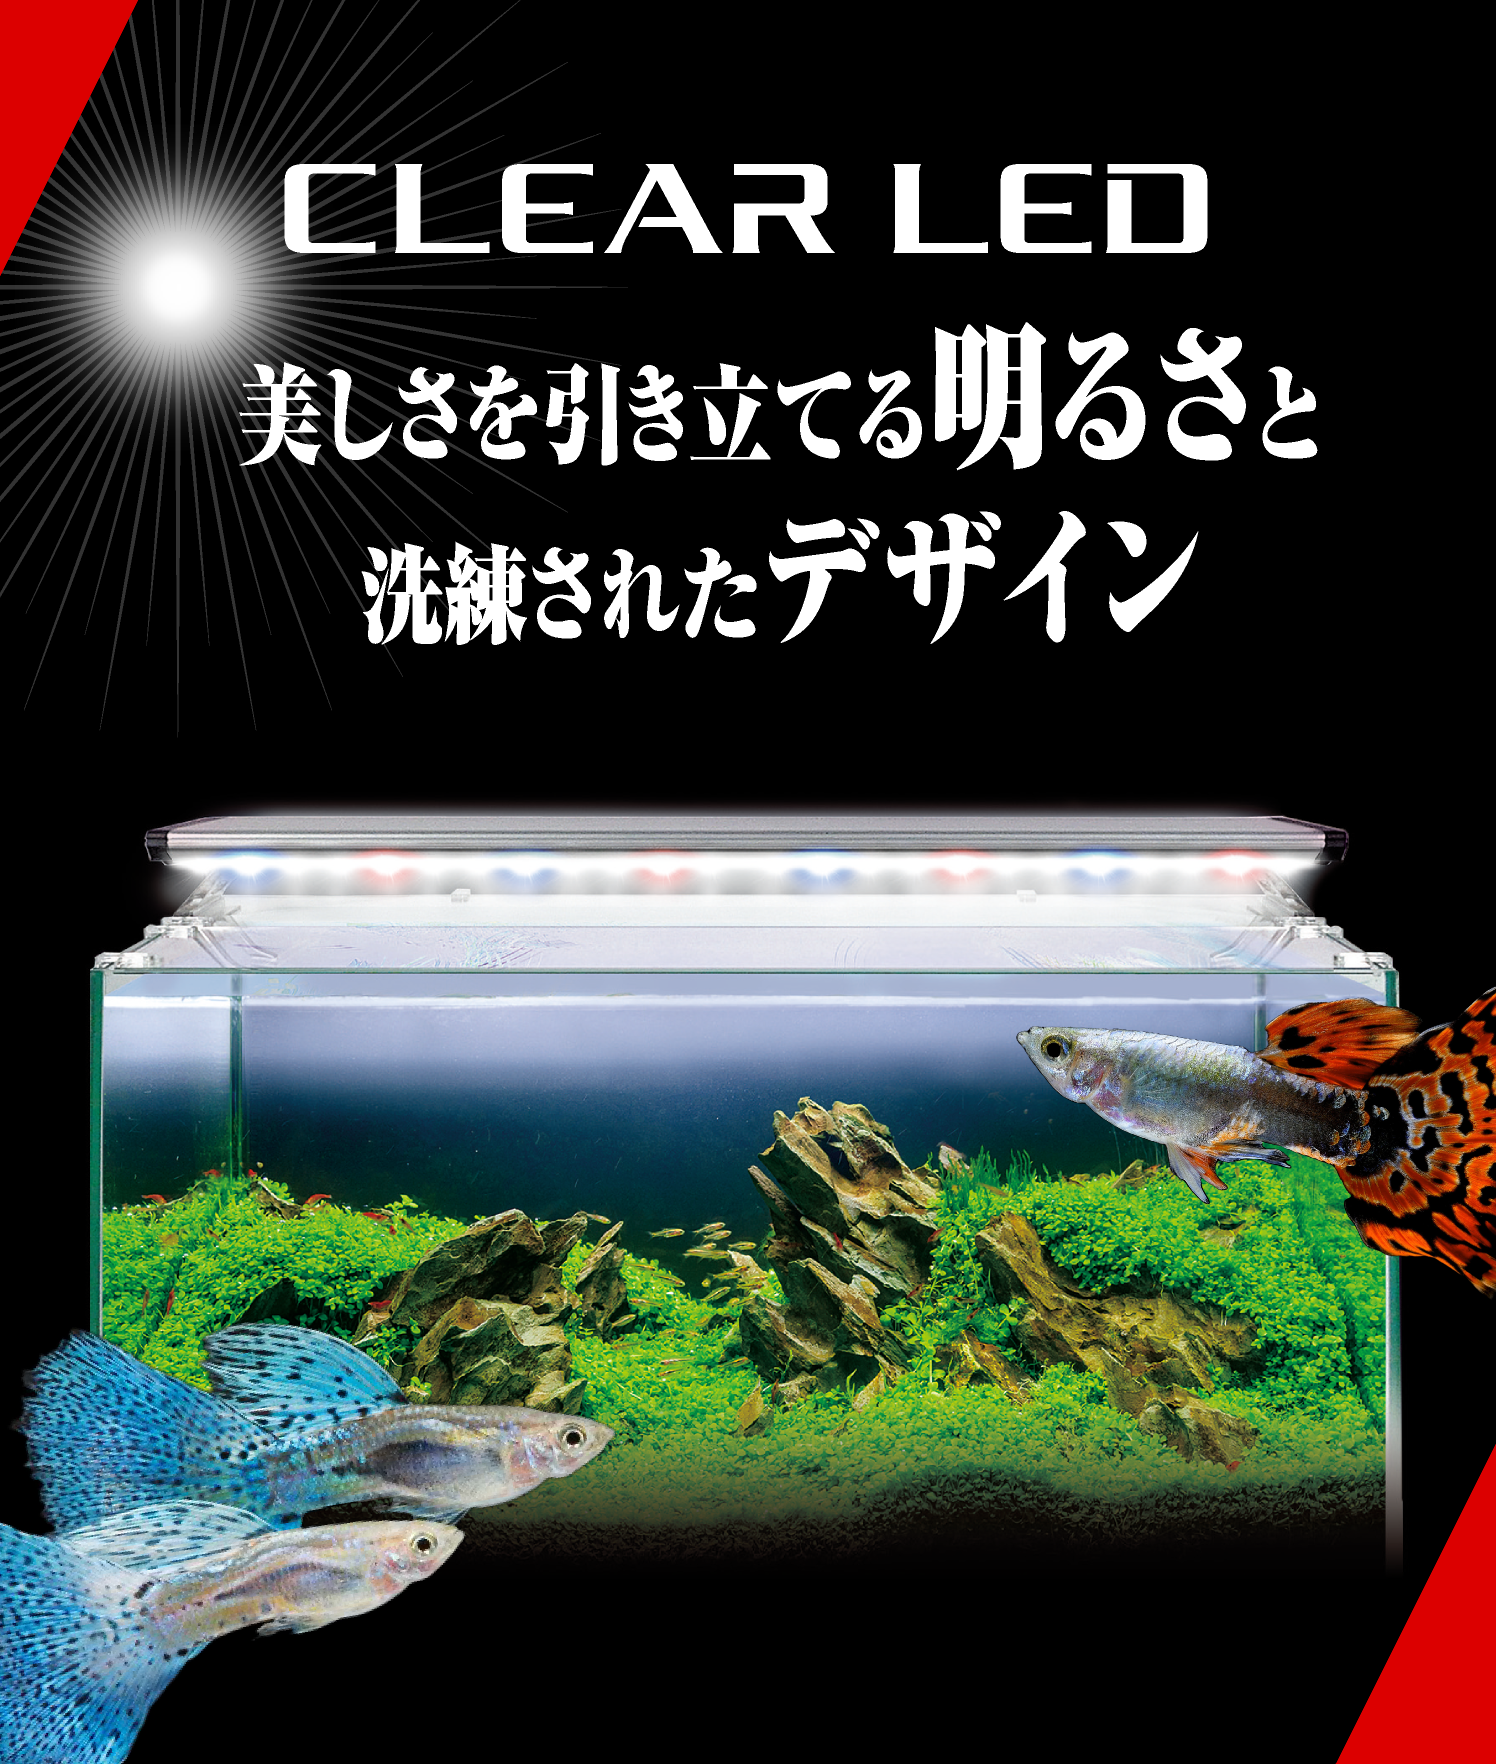 数量限定価格!! GEX ジェックス CLEAR LED Pittera クリアLED ピテラ 観賞魚用照明器具 riosmauricio.com